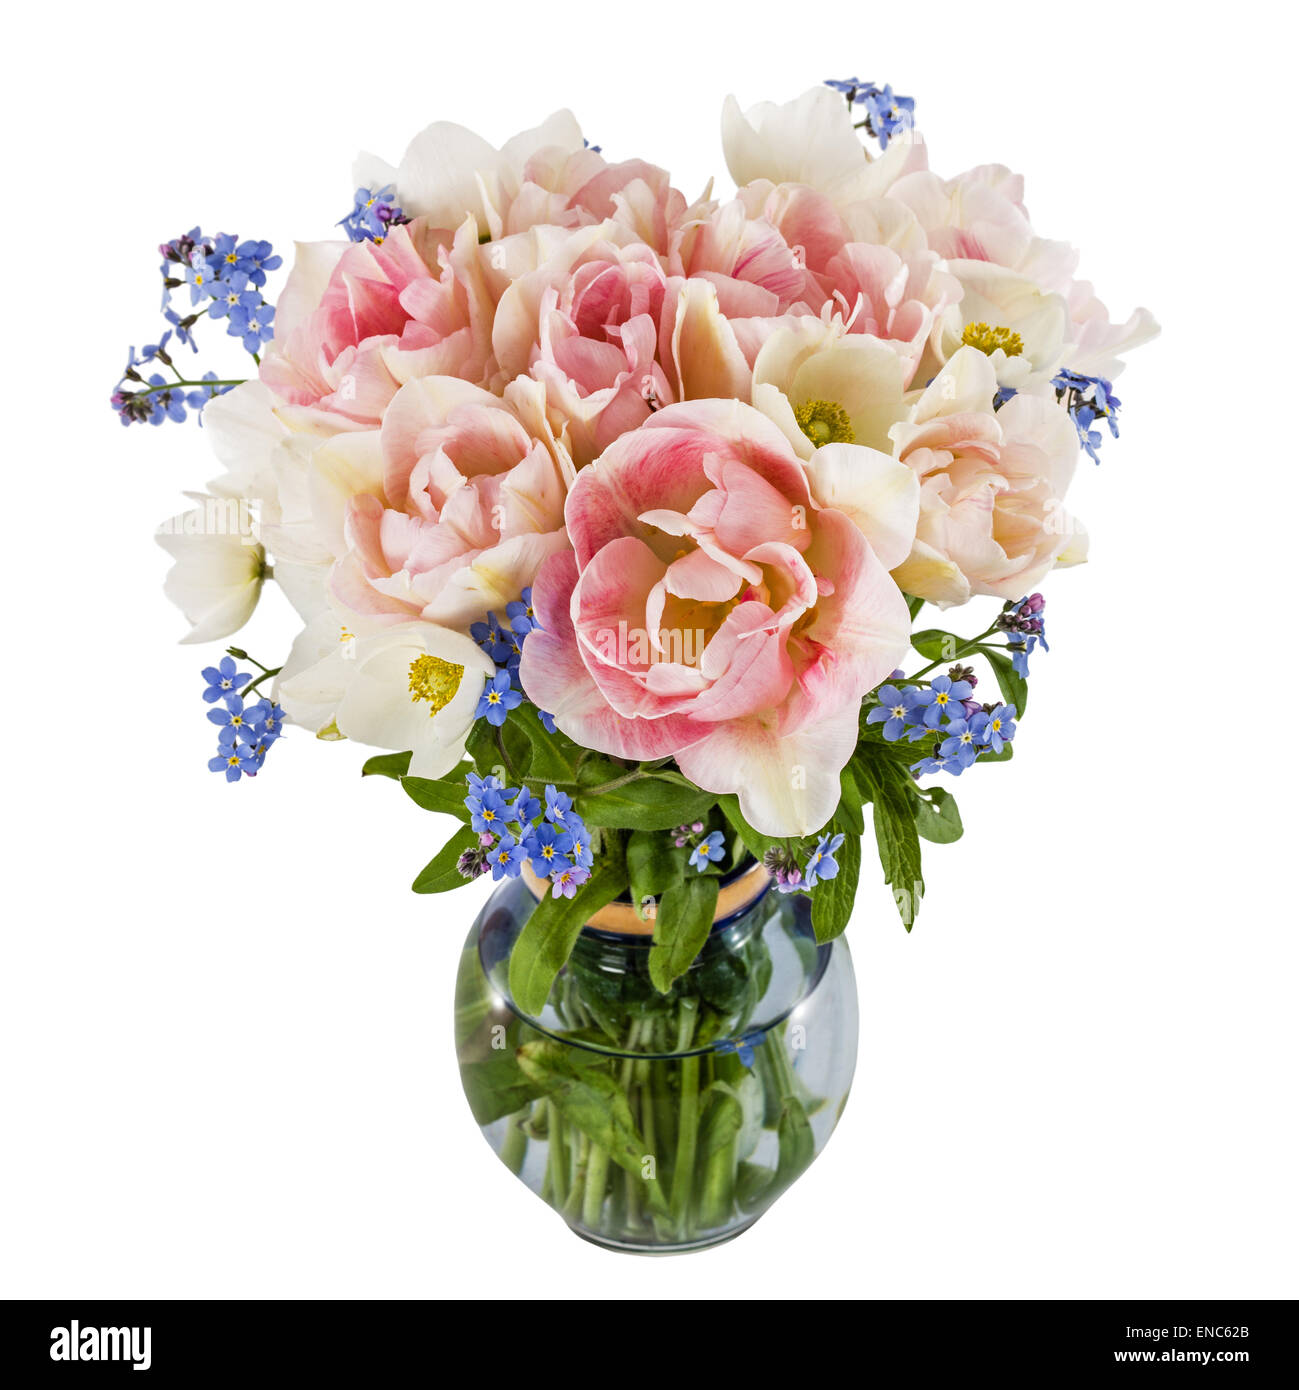 Bouquet de fleurs dans un vase, tulipes et forget-me-not, isolé sur fond blanc Banque D'Images